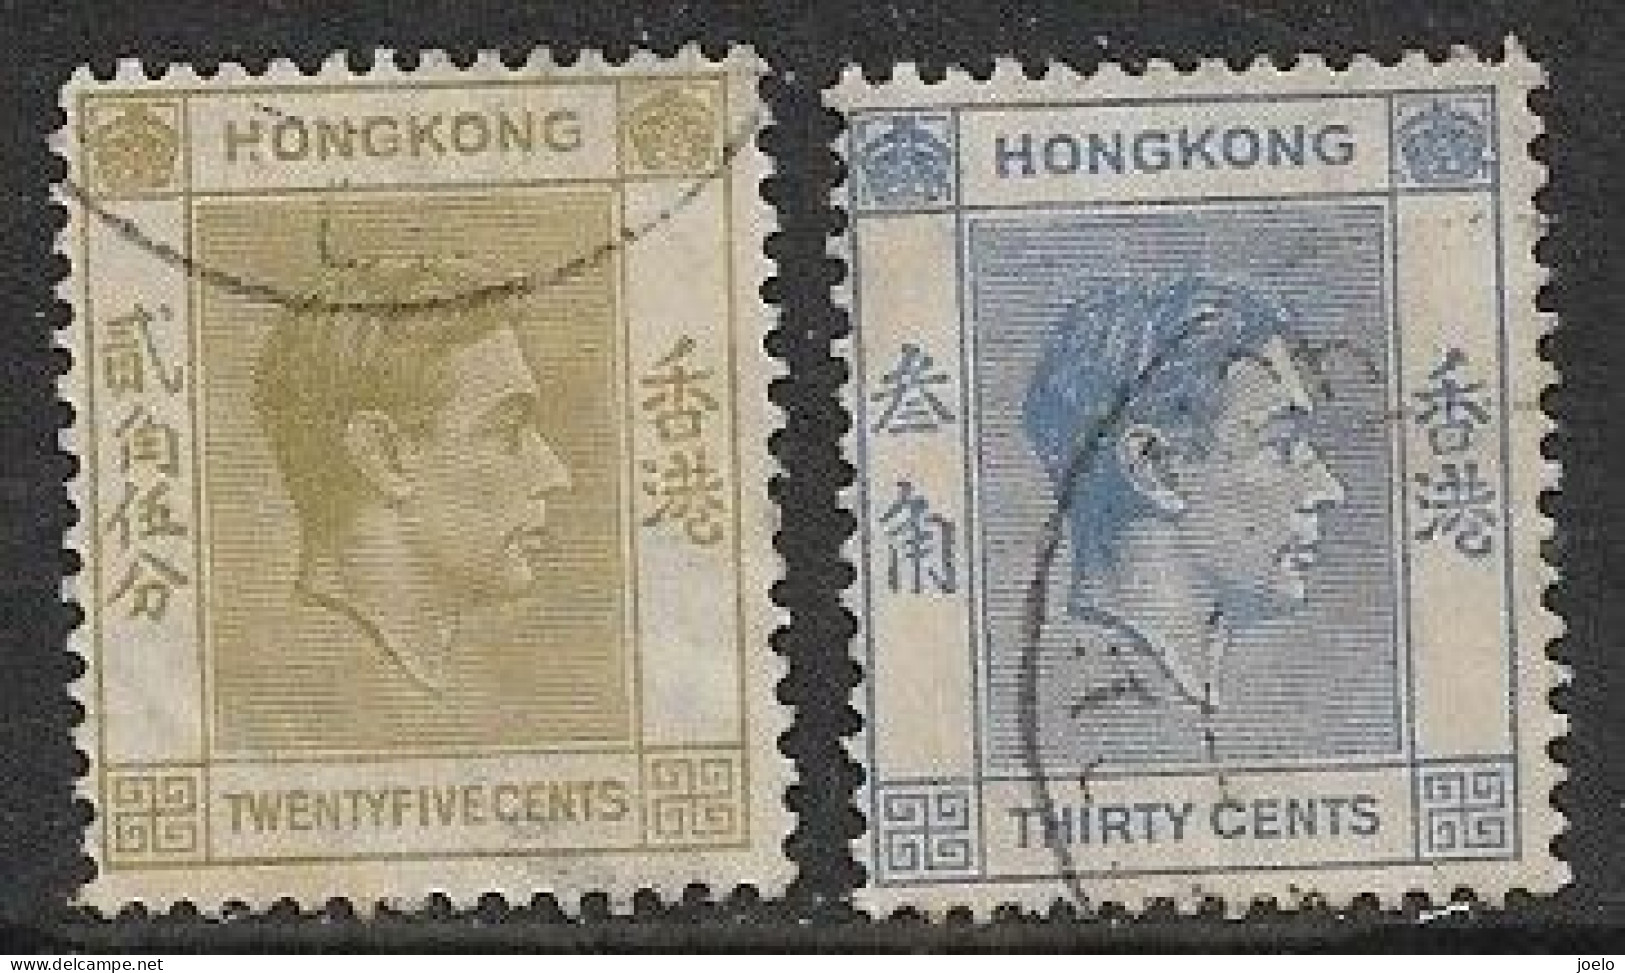 HONG KONG KGVl 1938 DEFINITIVES 25c OLIVE & 30c BLUE PAIR - Oblitérés